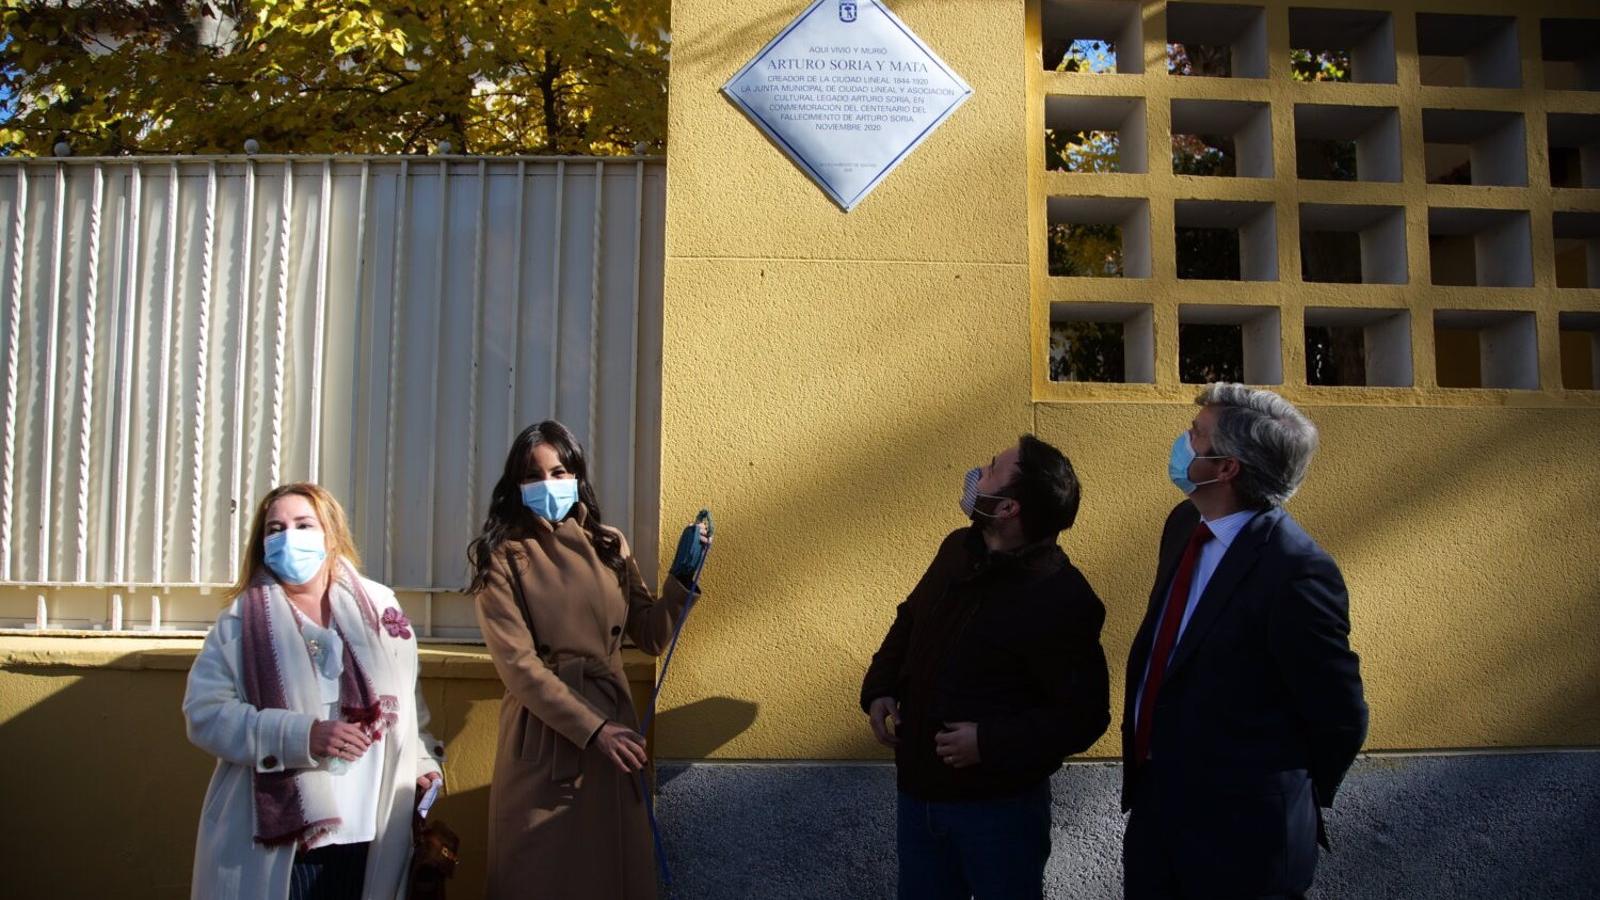 Una placa conmemora los 100 años del fallecimiento del urbanista Arturo Soria, Hijo Predilecto de Madrid